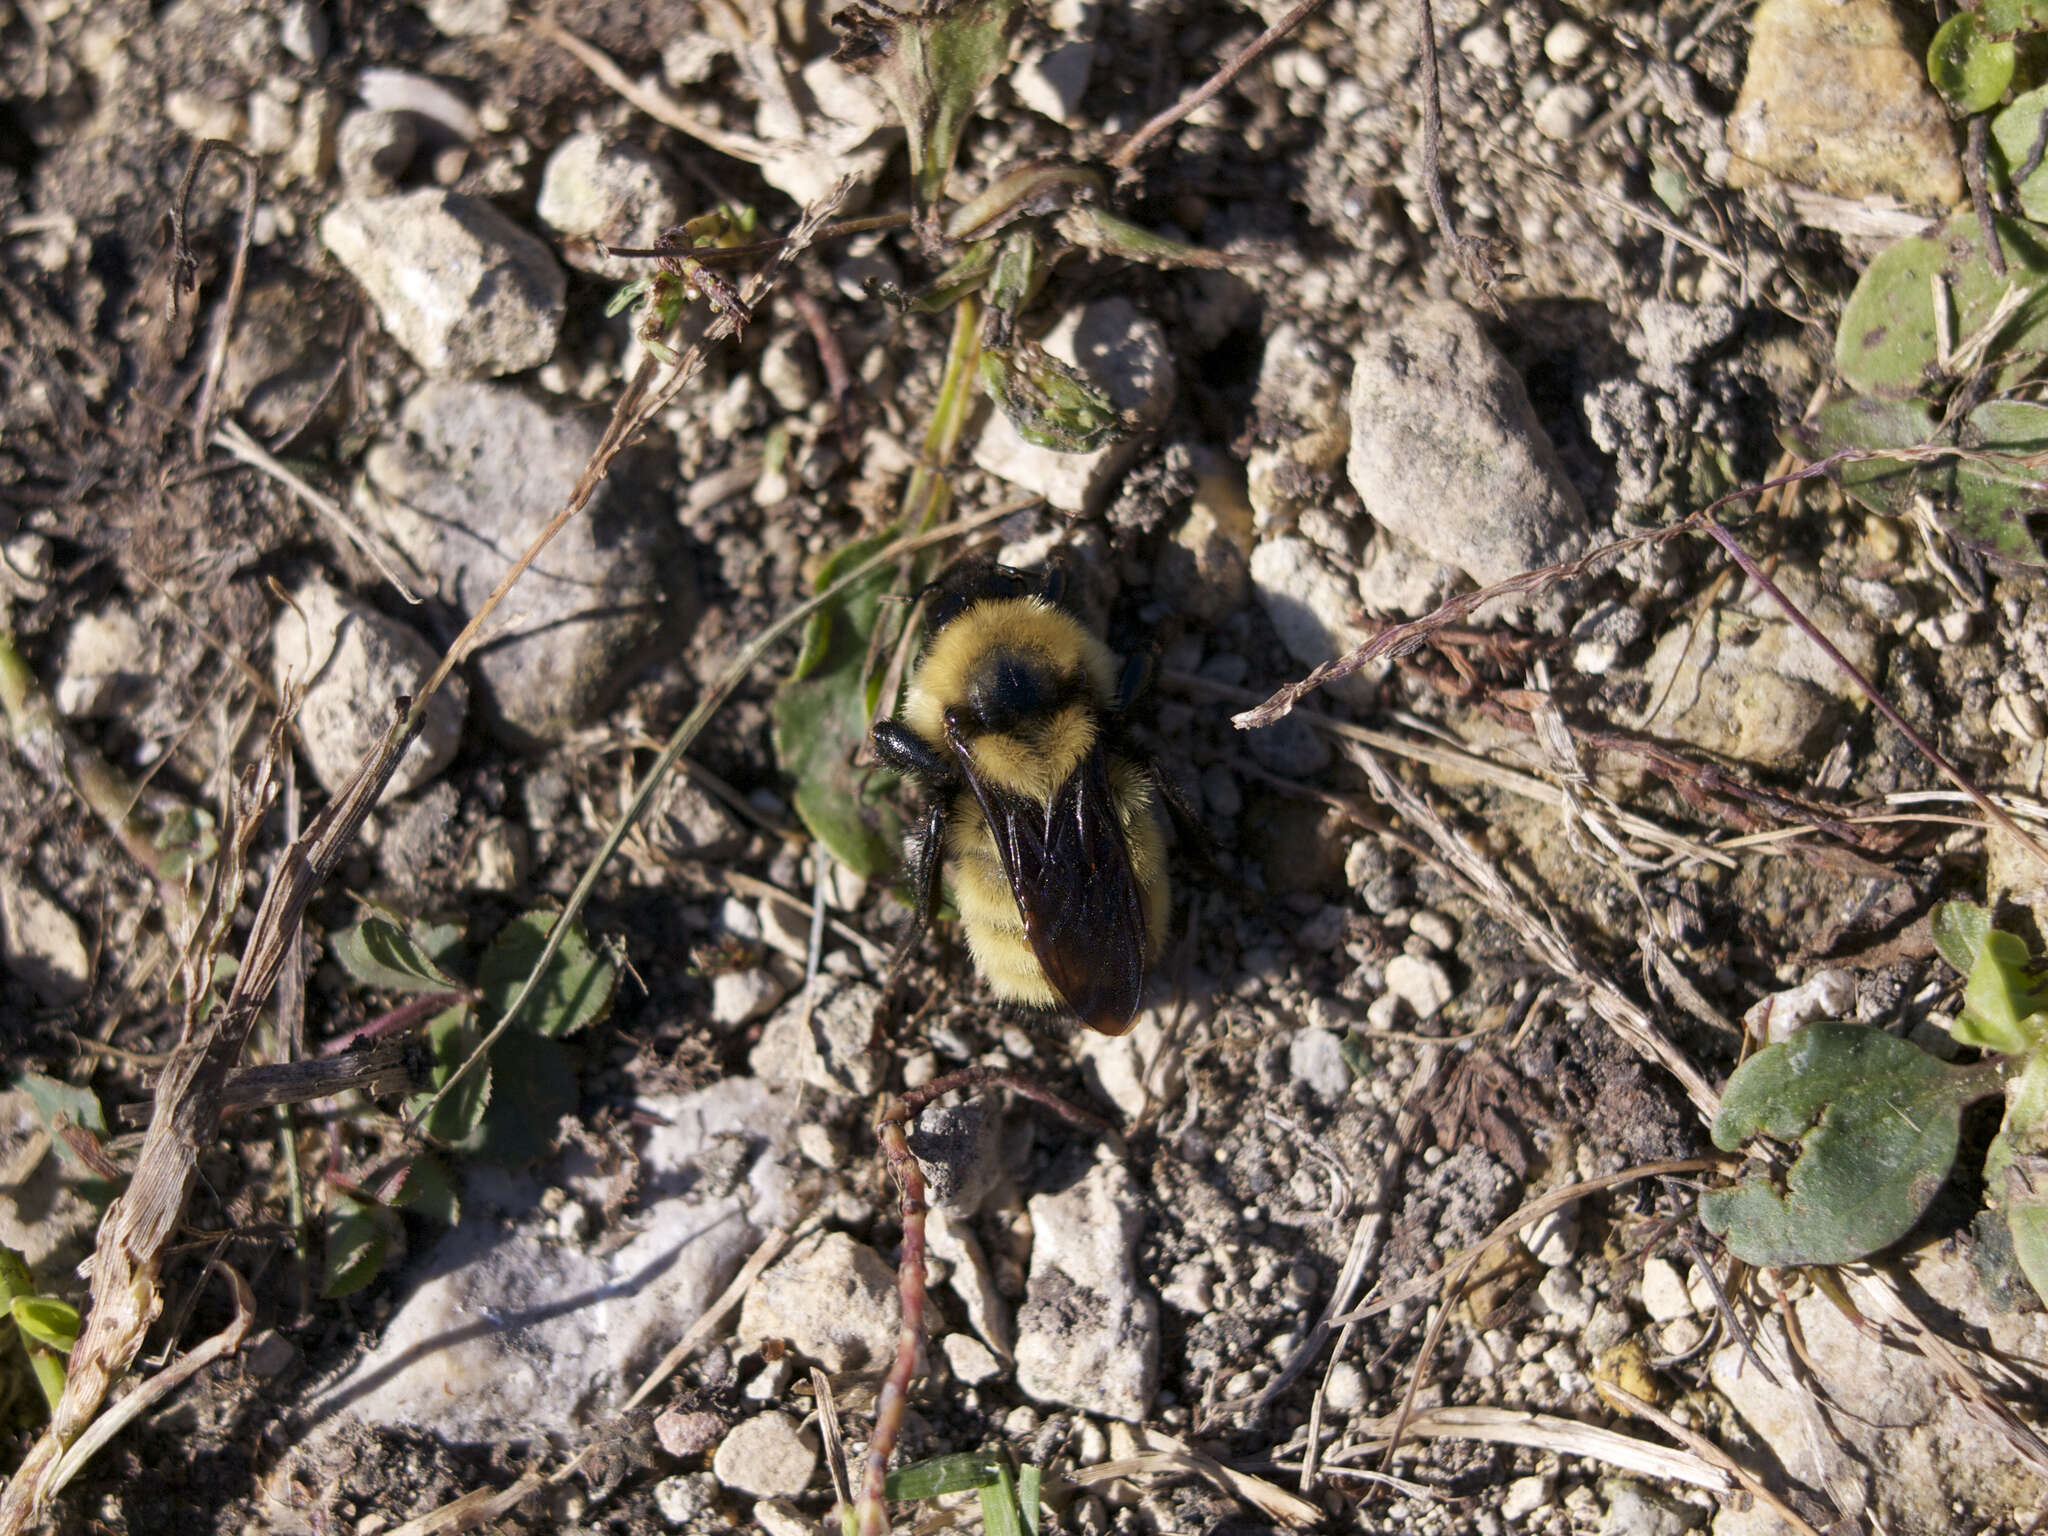 Image of Yellow Bumblebee